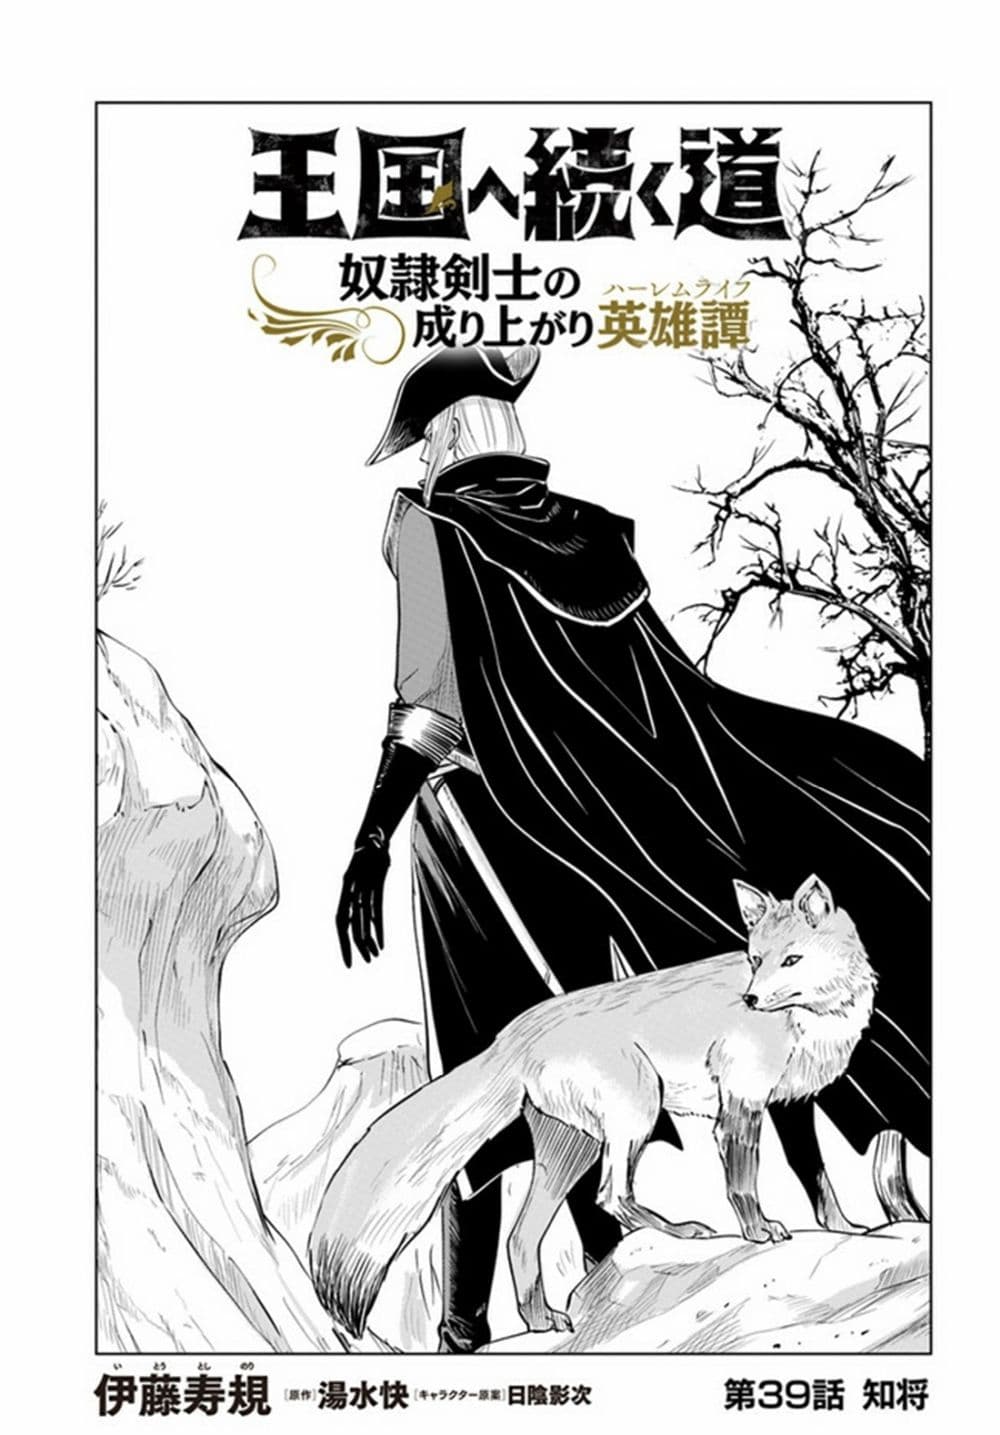 Oukoku e Tsuzuku Michi dorei Kenshi no Nariagari Eiyutan (Haaremu Raifu) - Road to the Kingdom Slave Swordsman the Rise of Heroes - Harem Life 39-39